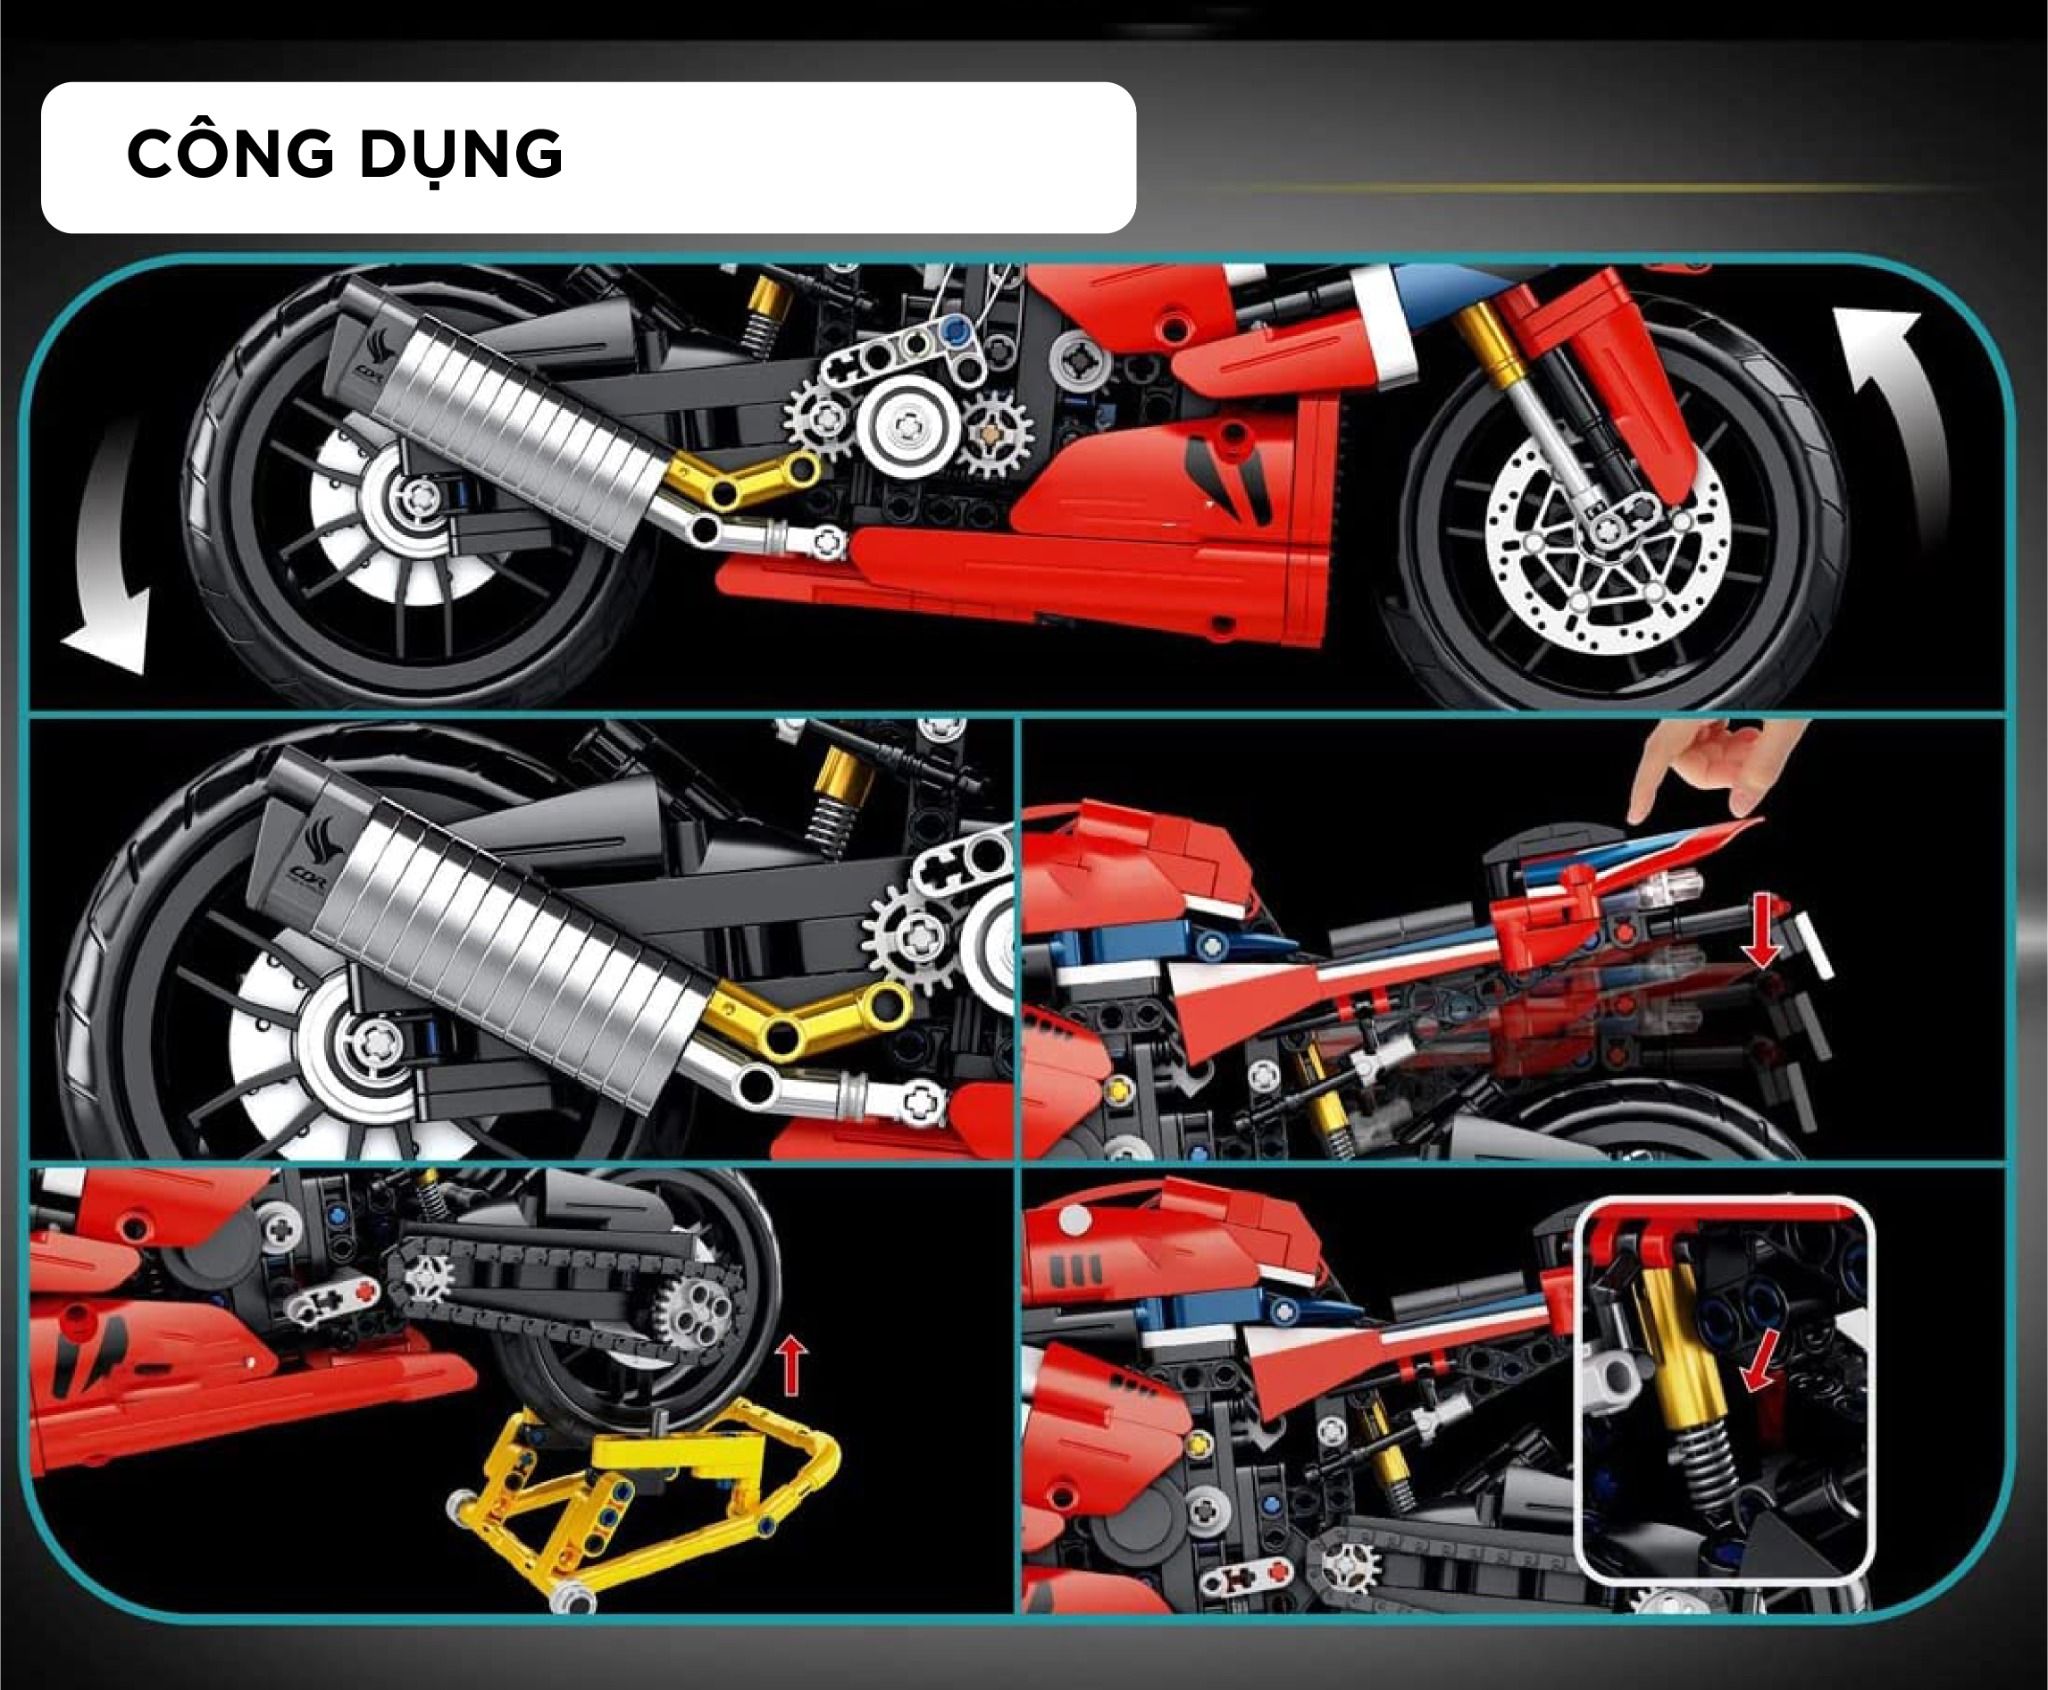  Mô hình xe mô tô lắp ghép Honda CBR 1000RR-R Technic 1017 pcs tỉ lệ 1:5 LG013 